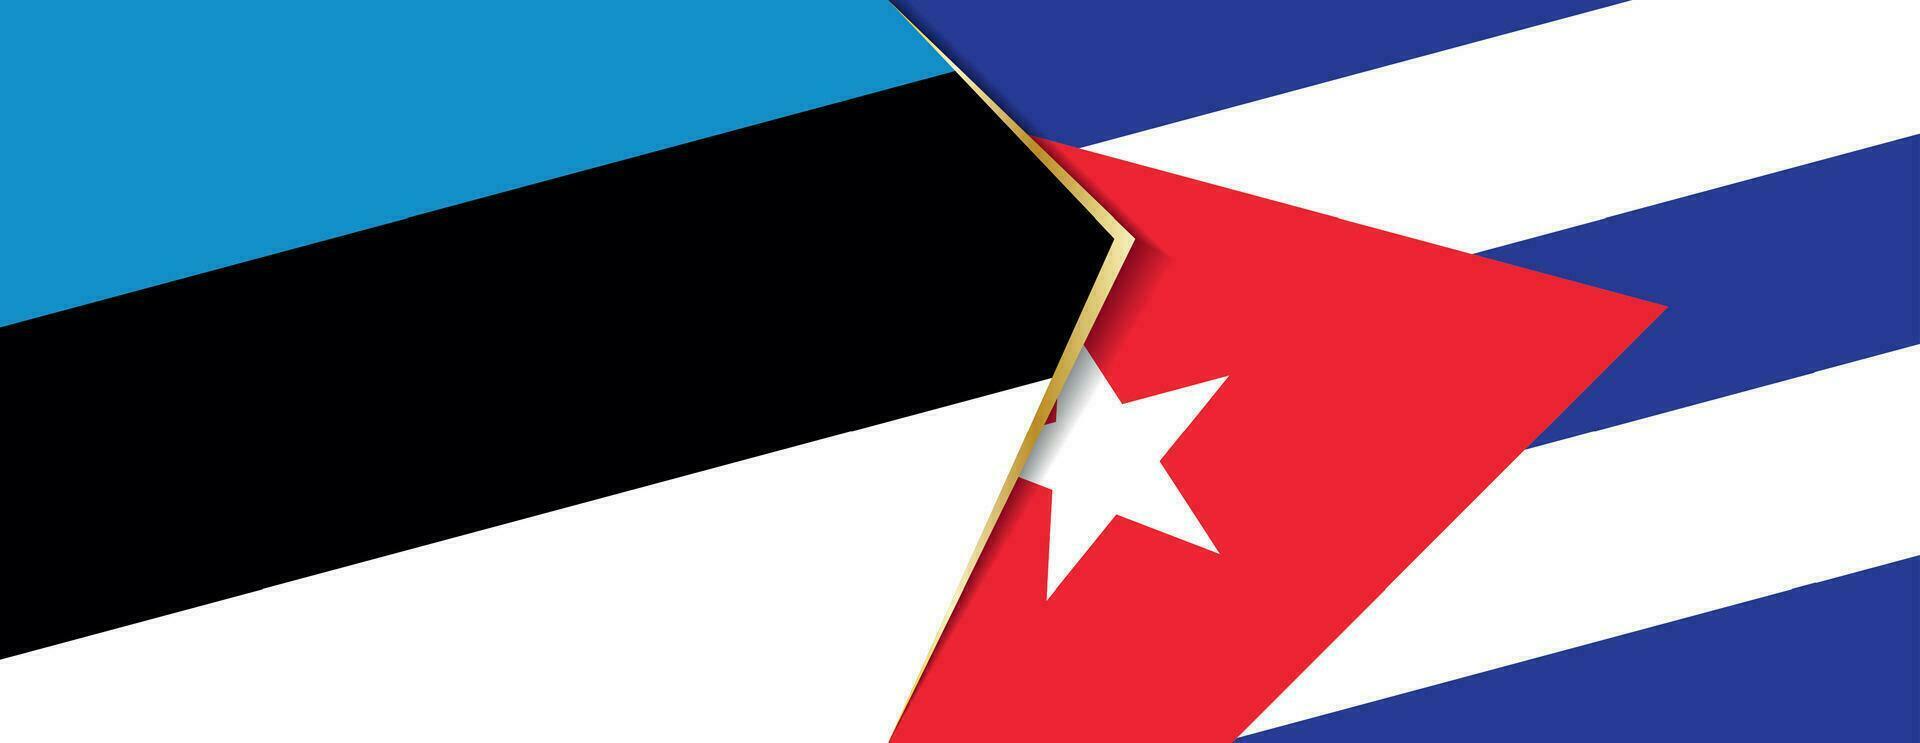 Estonia e Cuba bandiere, Due vettore bandiere.